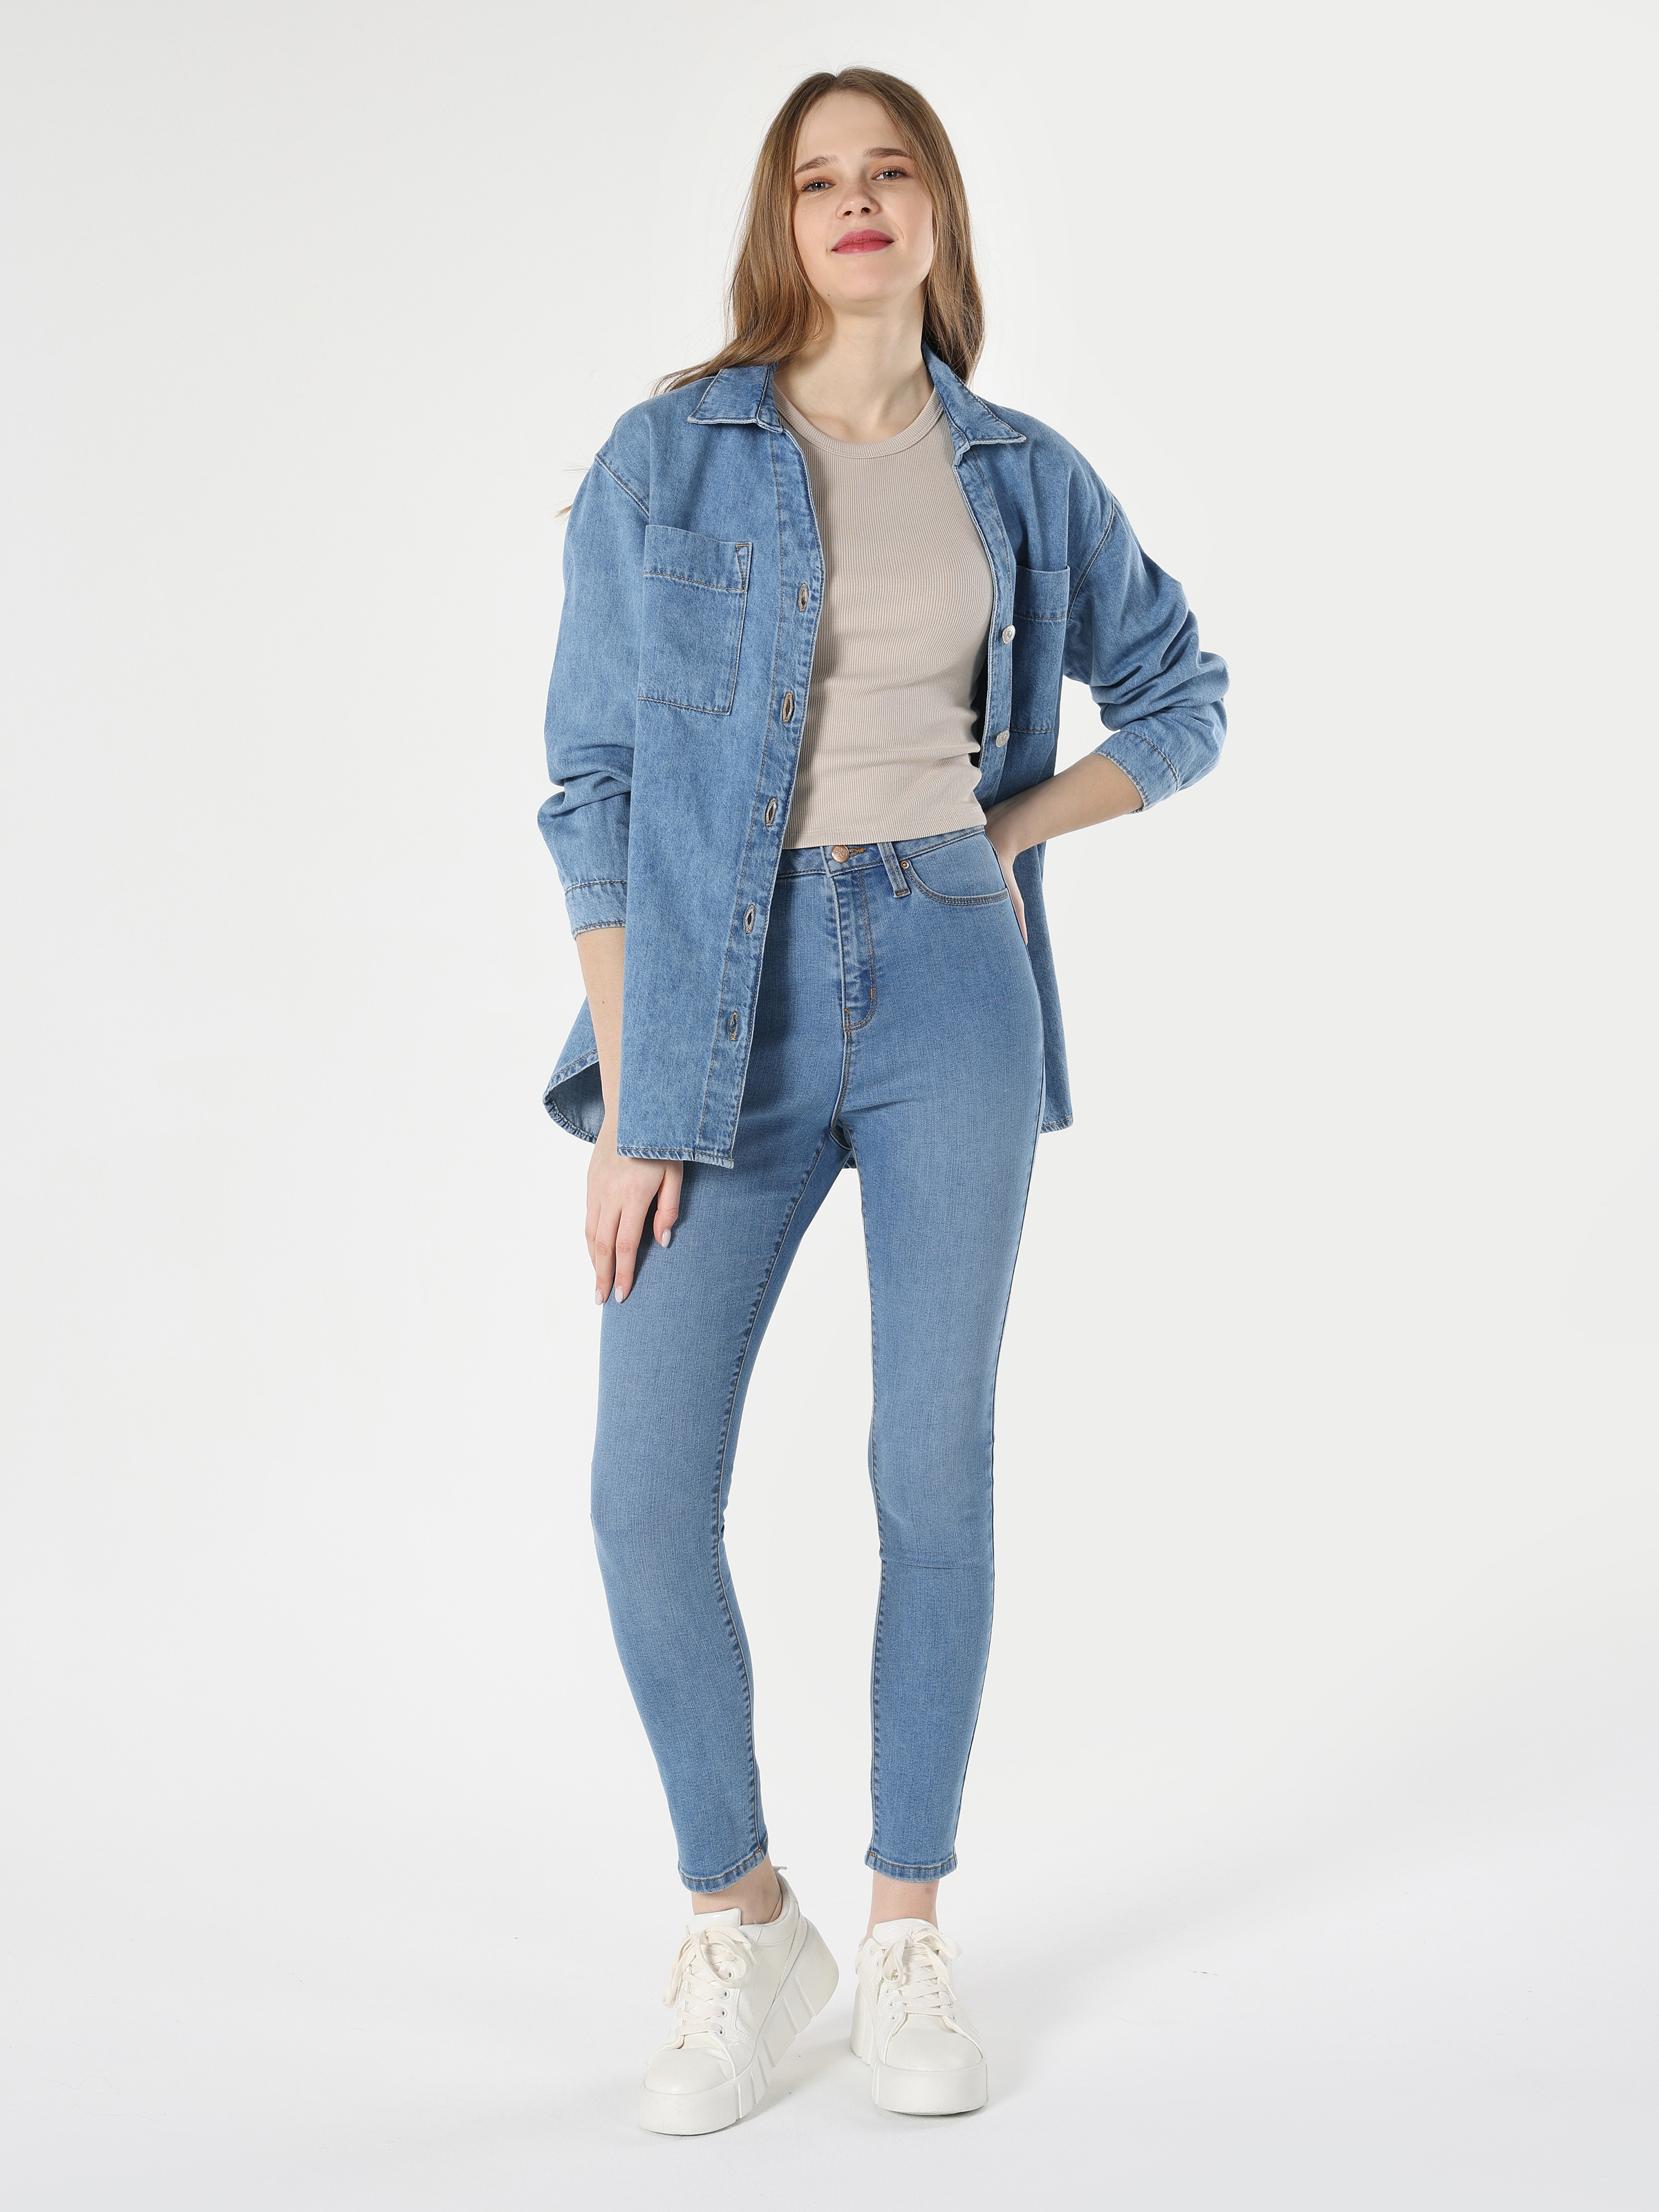 Afficher les détails de 760 Diana Pantalon En Jean Bleu Taille Haute À Jambe Étroite Et Coupe Super Slim Pour Femme